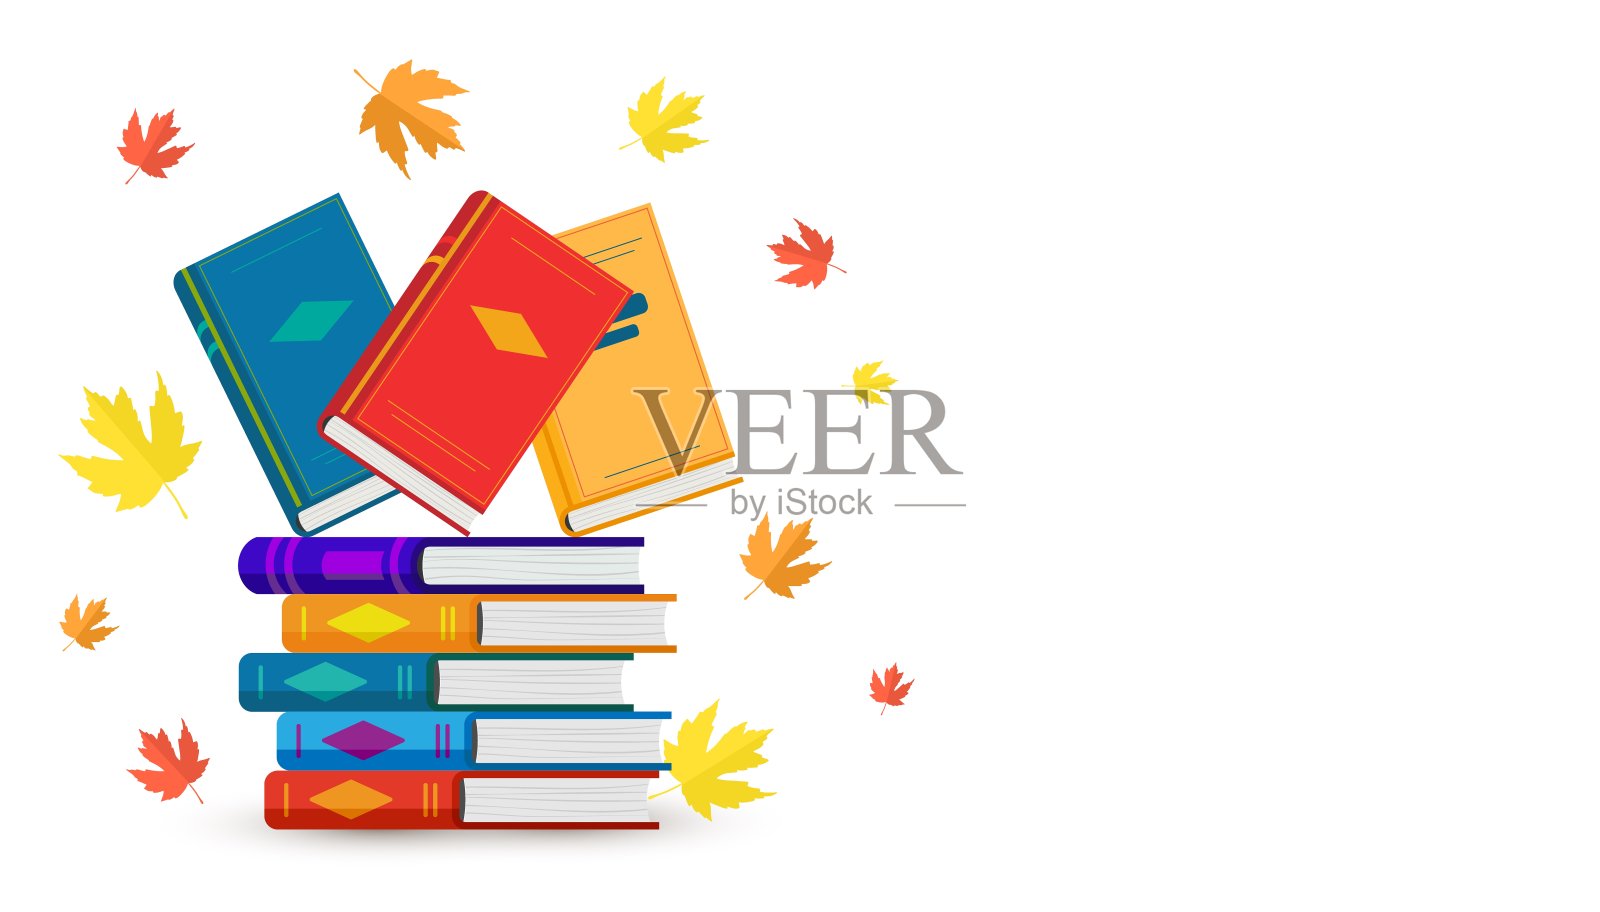 矢量模板与堆叠彩色书籍与秋天的叶子和复制空间。设计元素图片